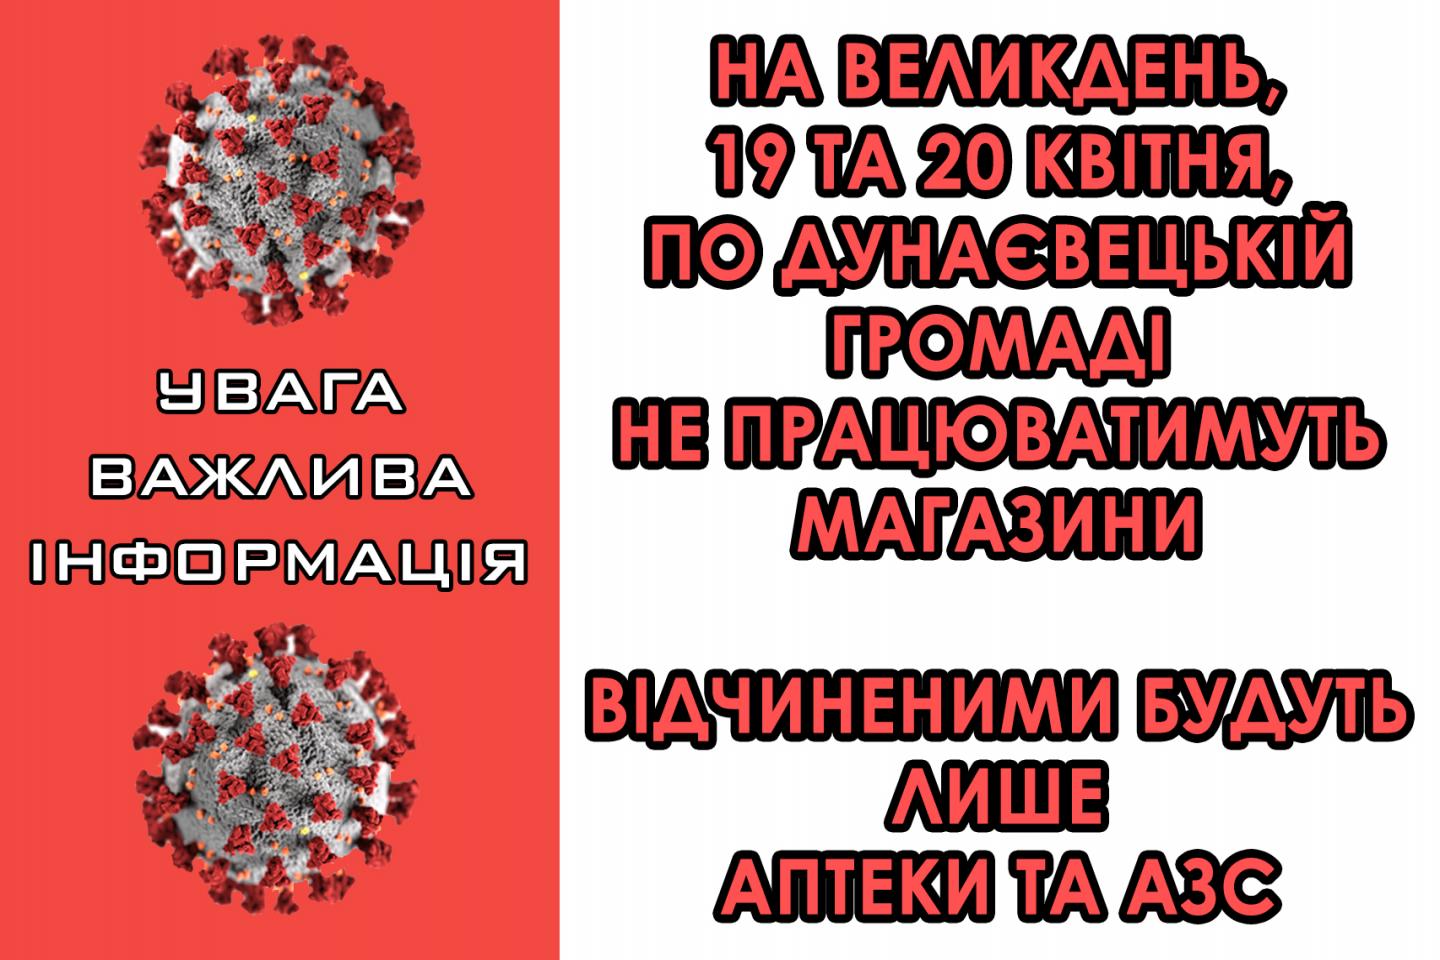 http://dunrada.gov.ua/uploadfile/archive_news/2020/04/16/2020-04-16_4255/images/images-75340.jpg